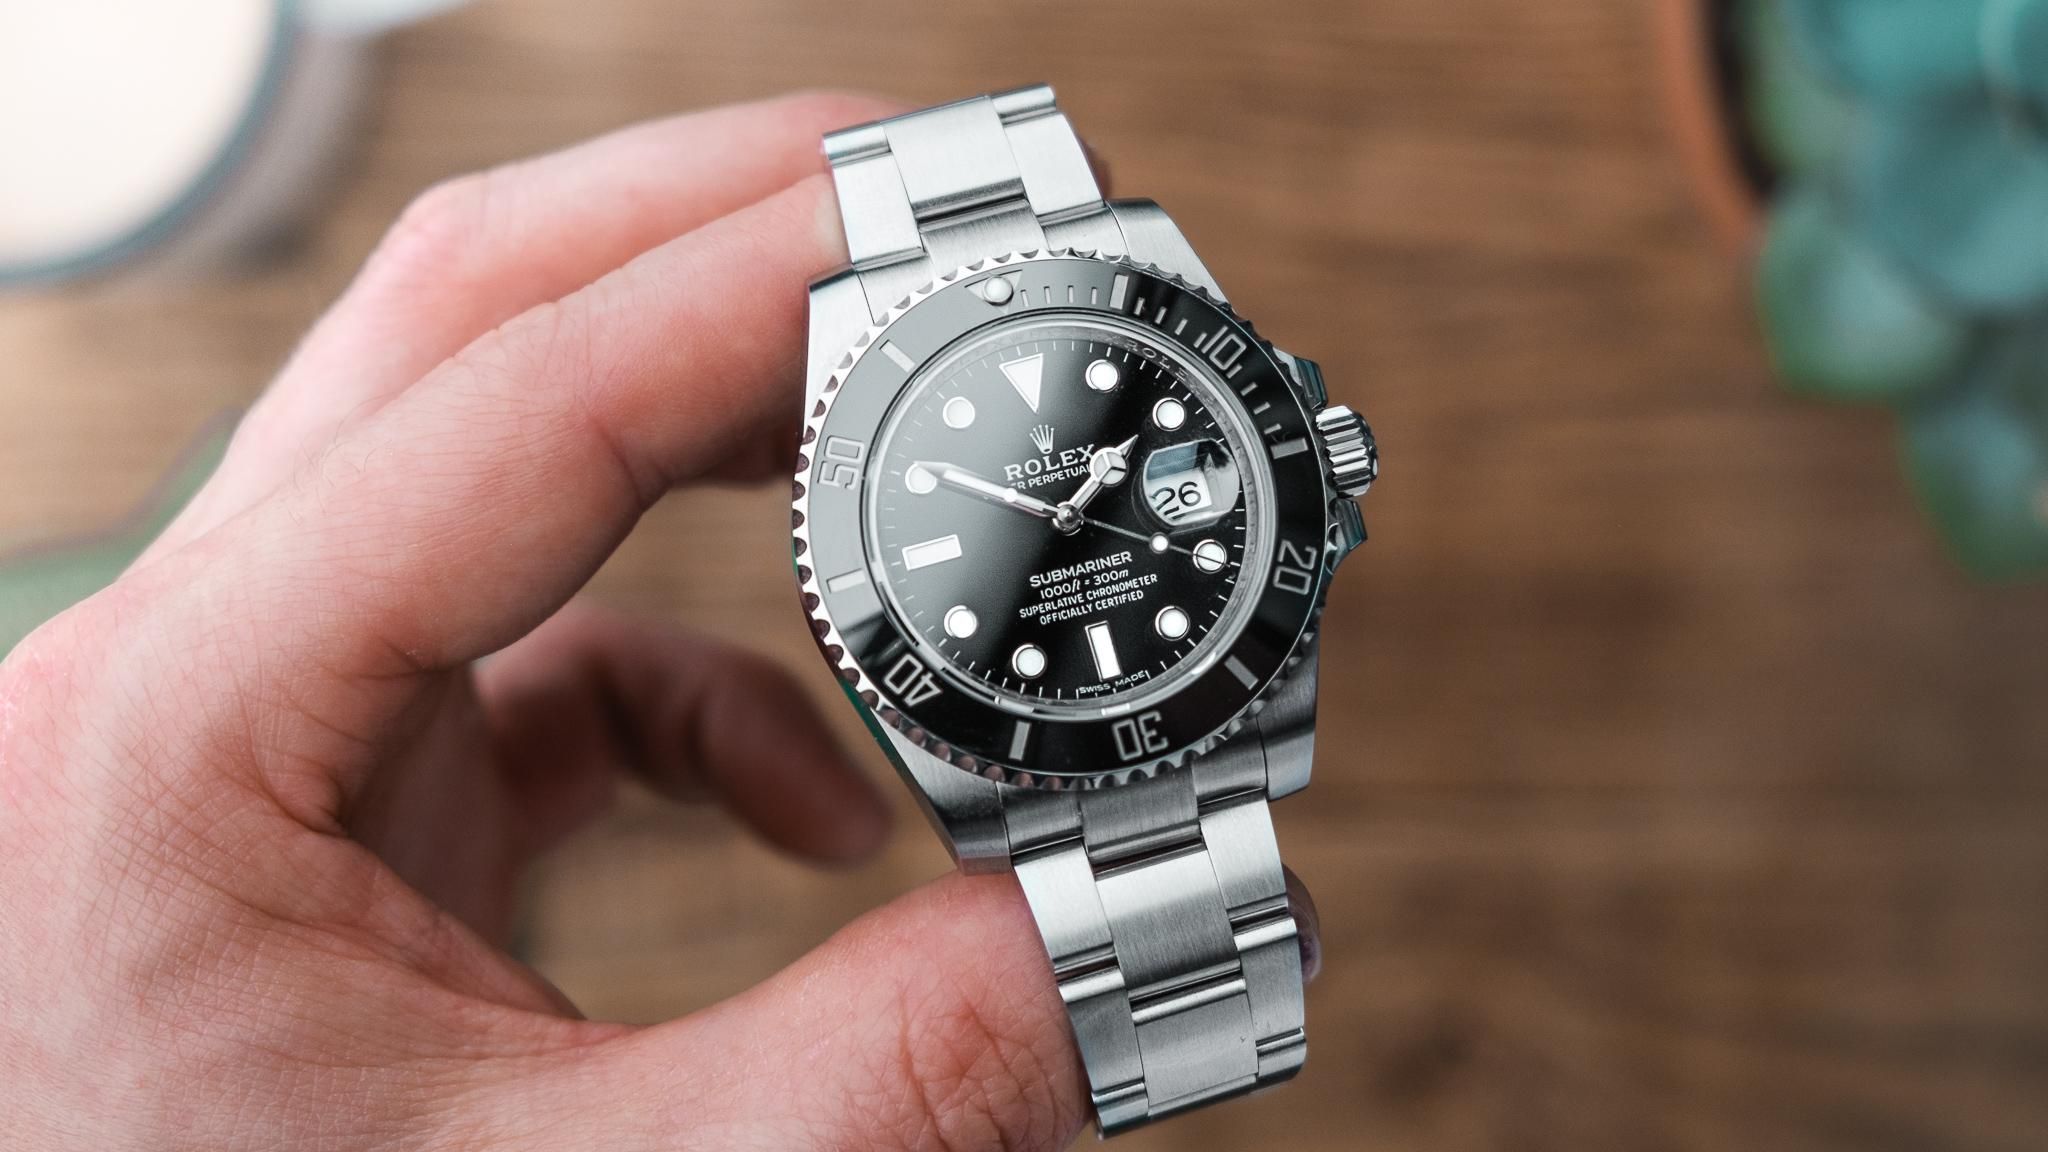  Андрей Задорожный не задекларировал свои драгоценные часы Rolex